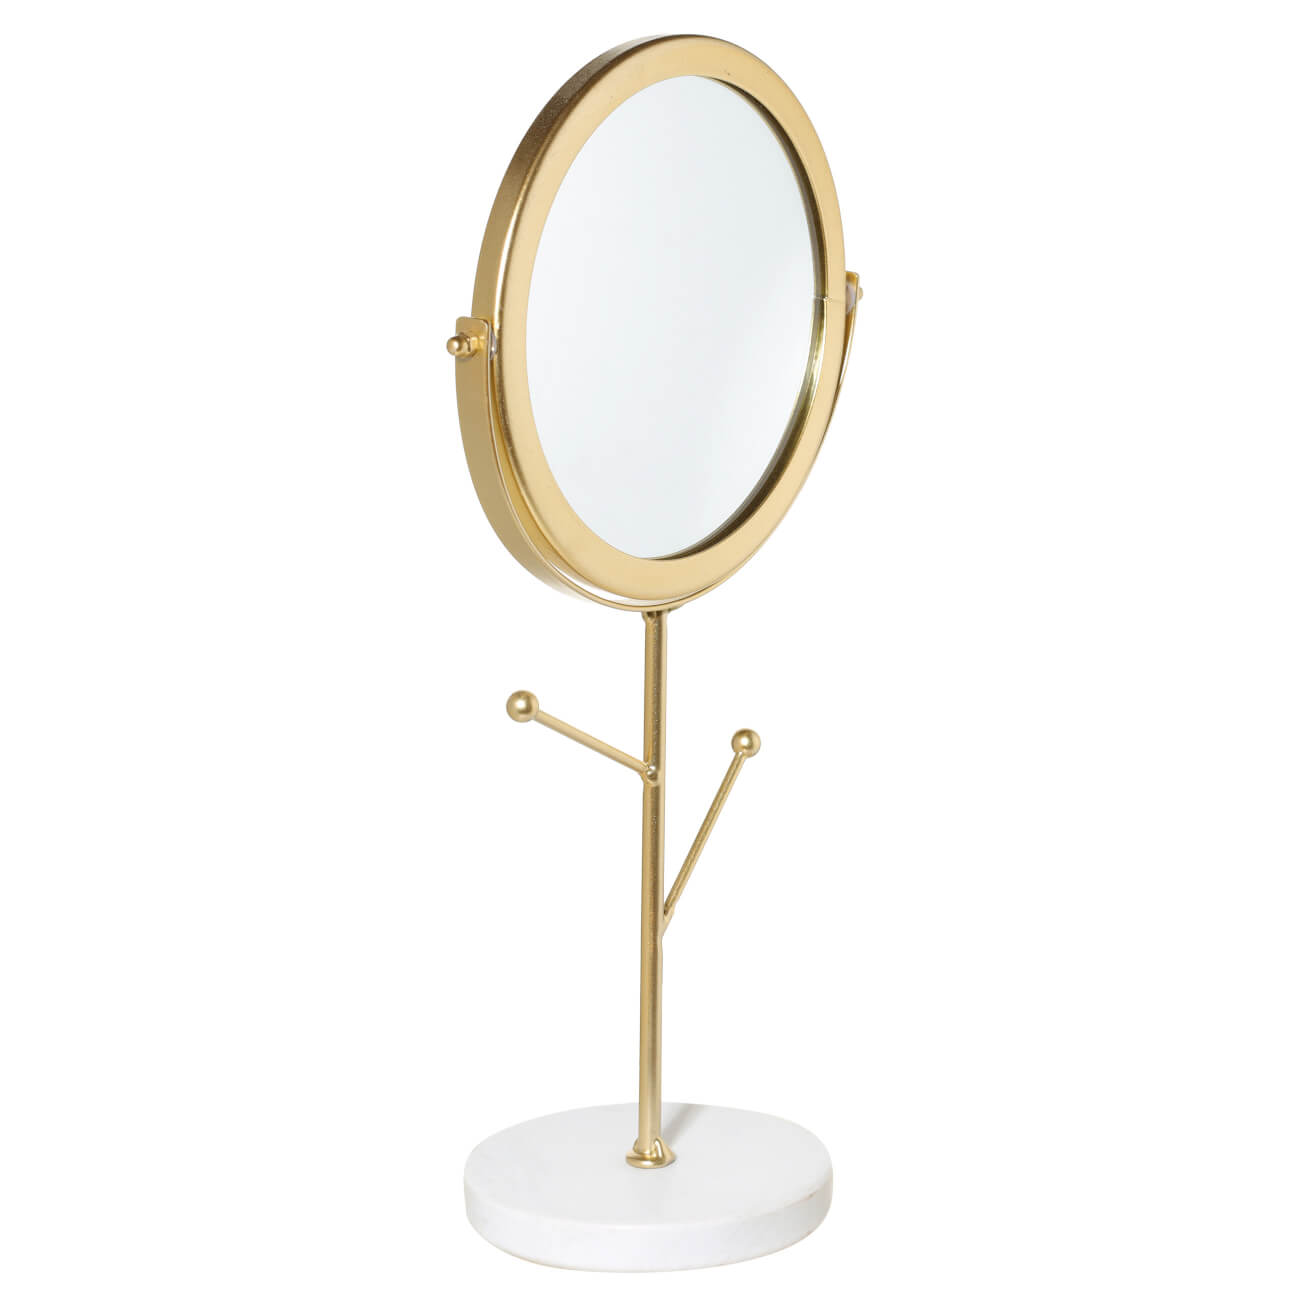 Зеркало настольное, 30 см, на ножке, с держателями для украшений, металл, золотистое, Maniera зеркало косметическое uniel tld 592 настольное 19 см